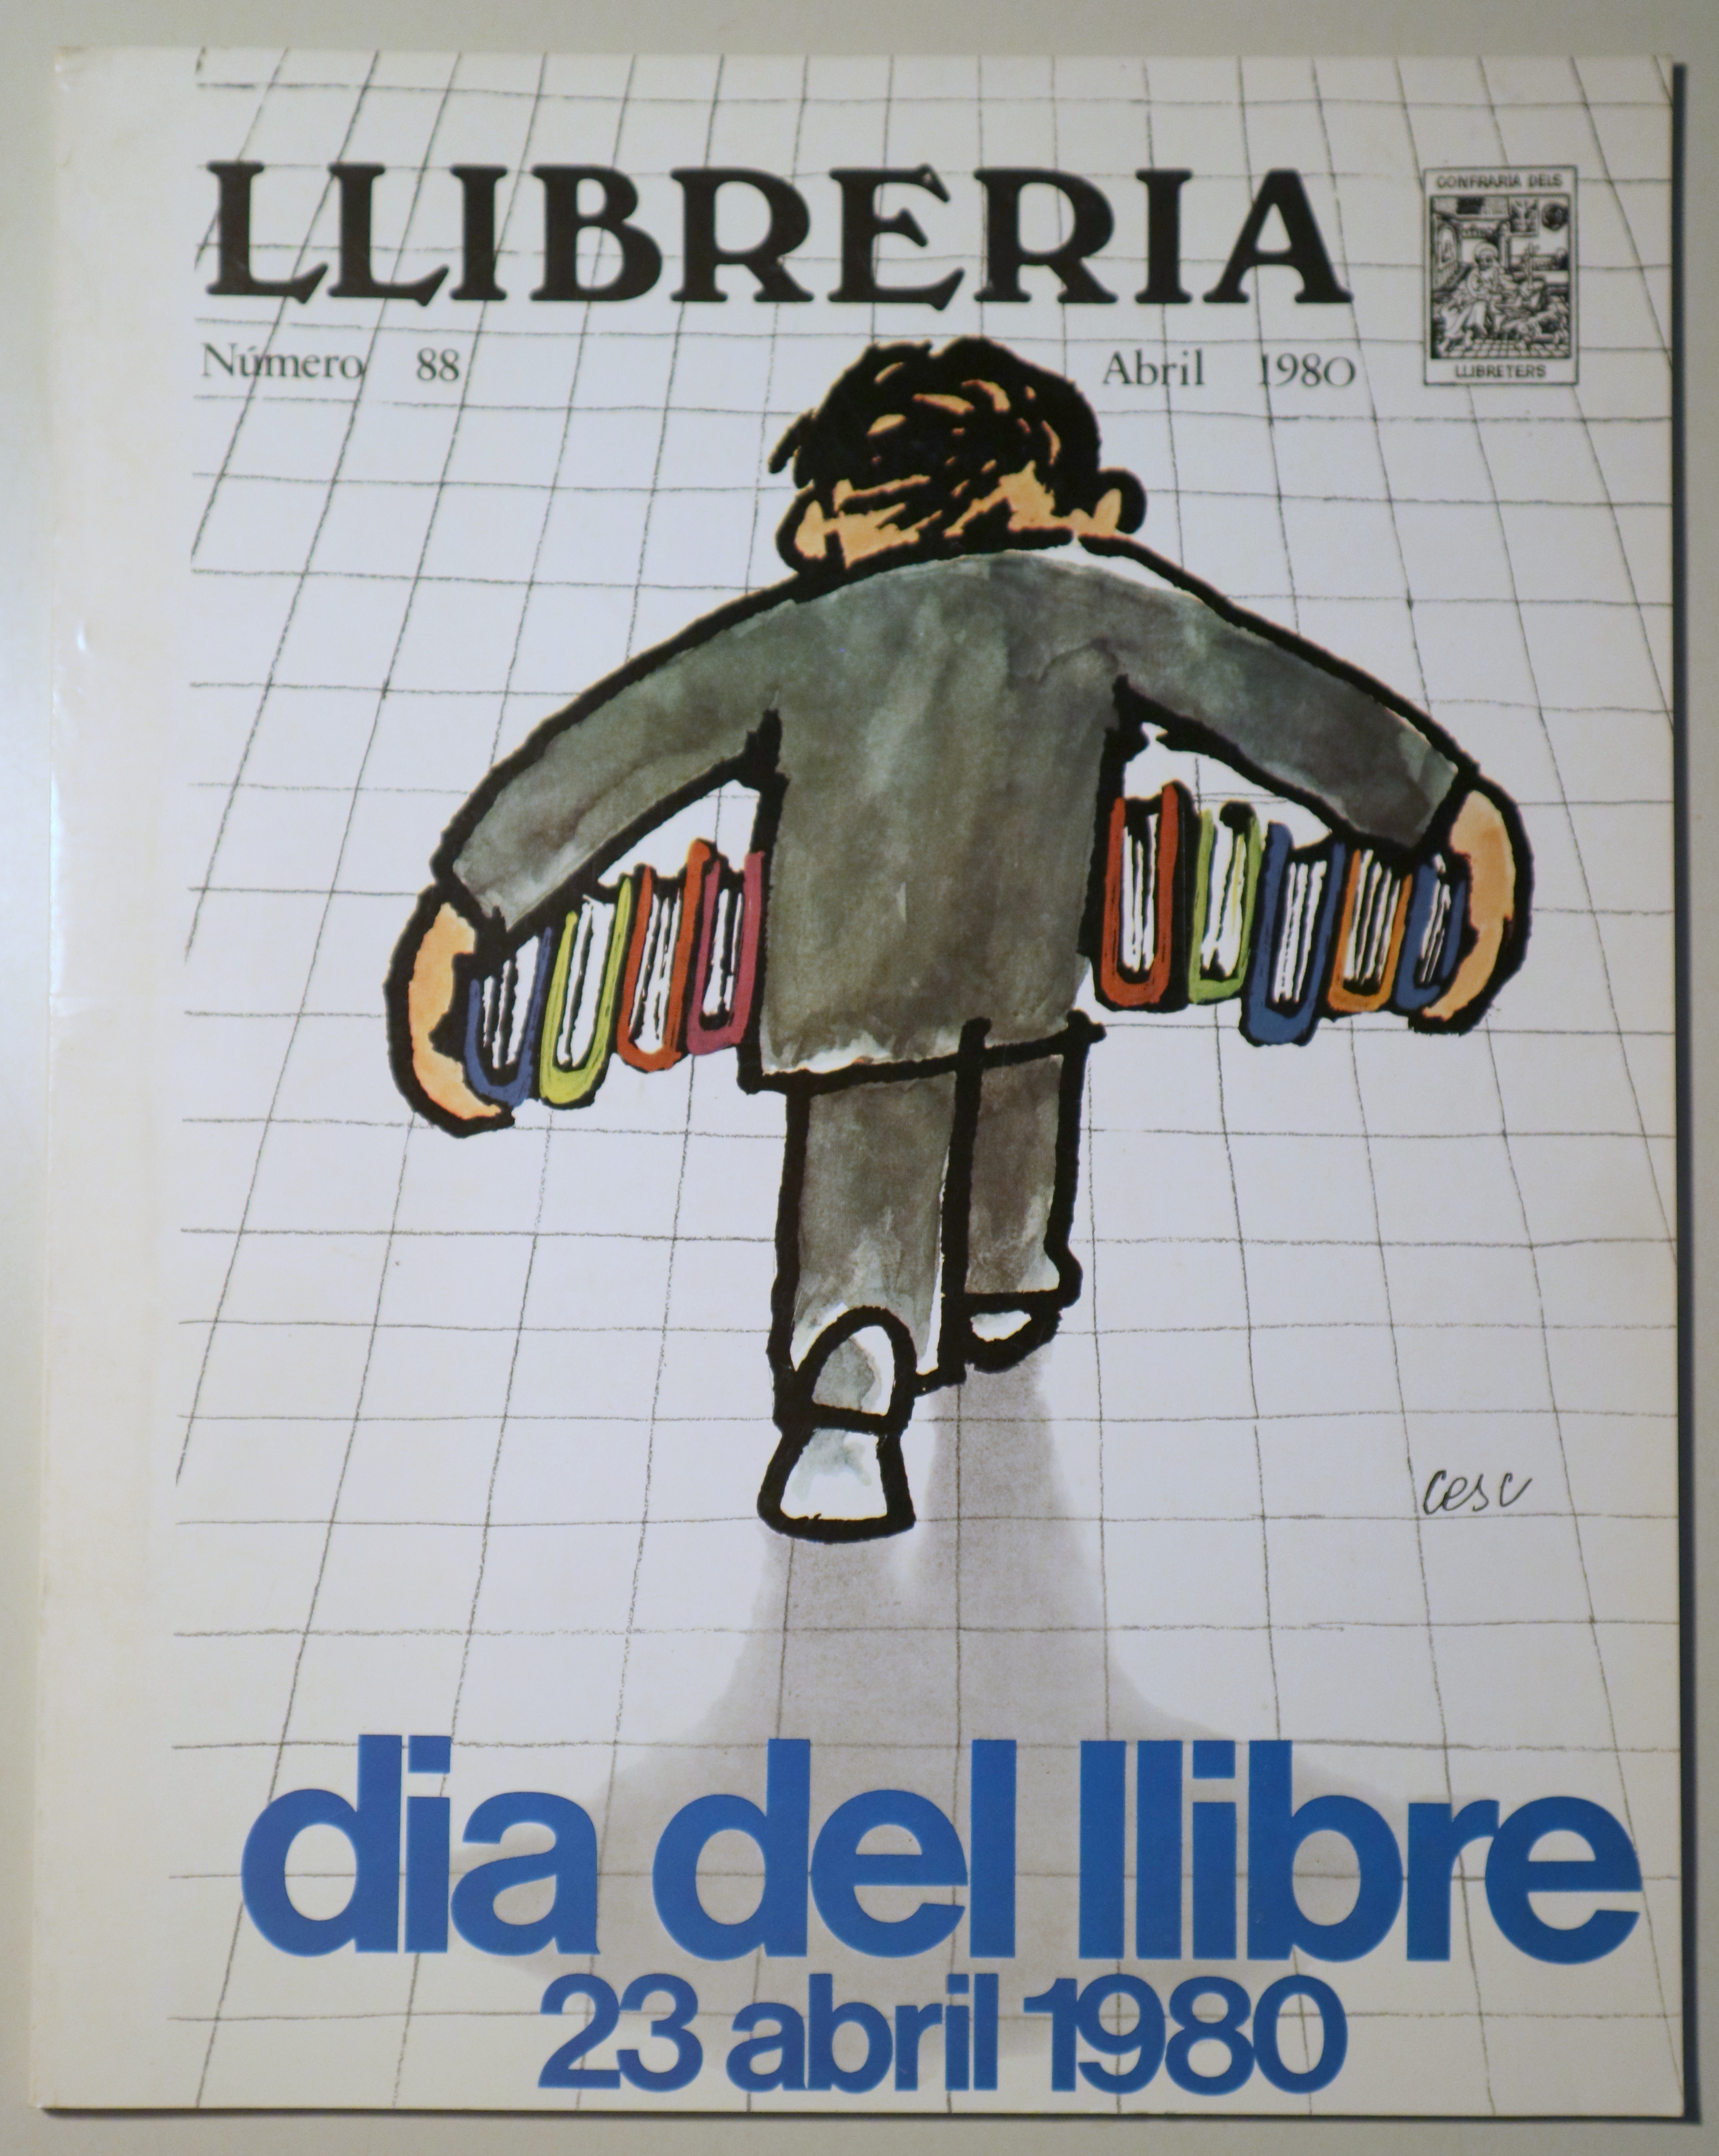 LLIBRERIA nº 88. Dia del llibre 23 abril 1980. Abril 1980 - Barcelona 1980 - Il·lustrat